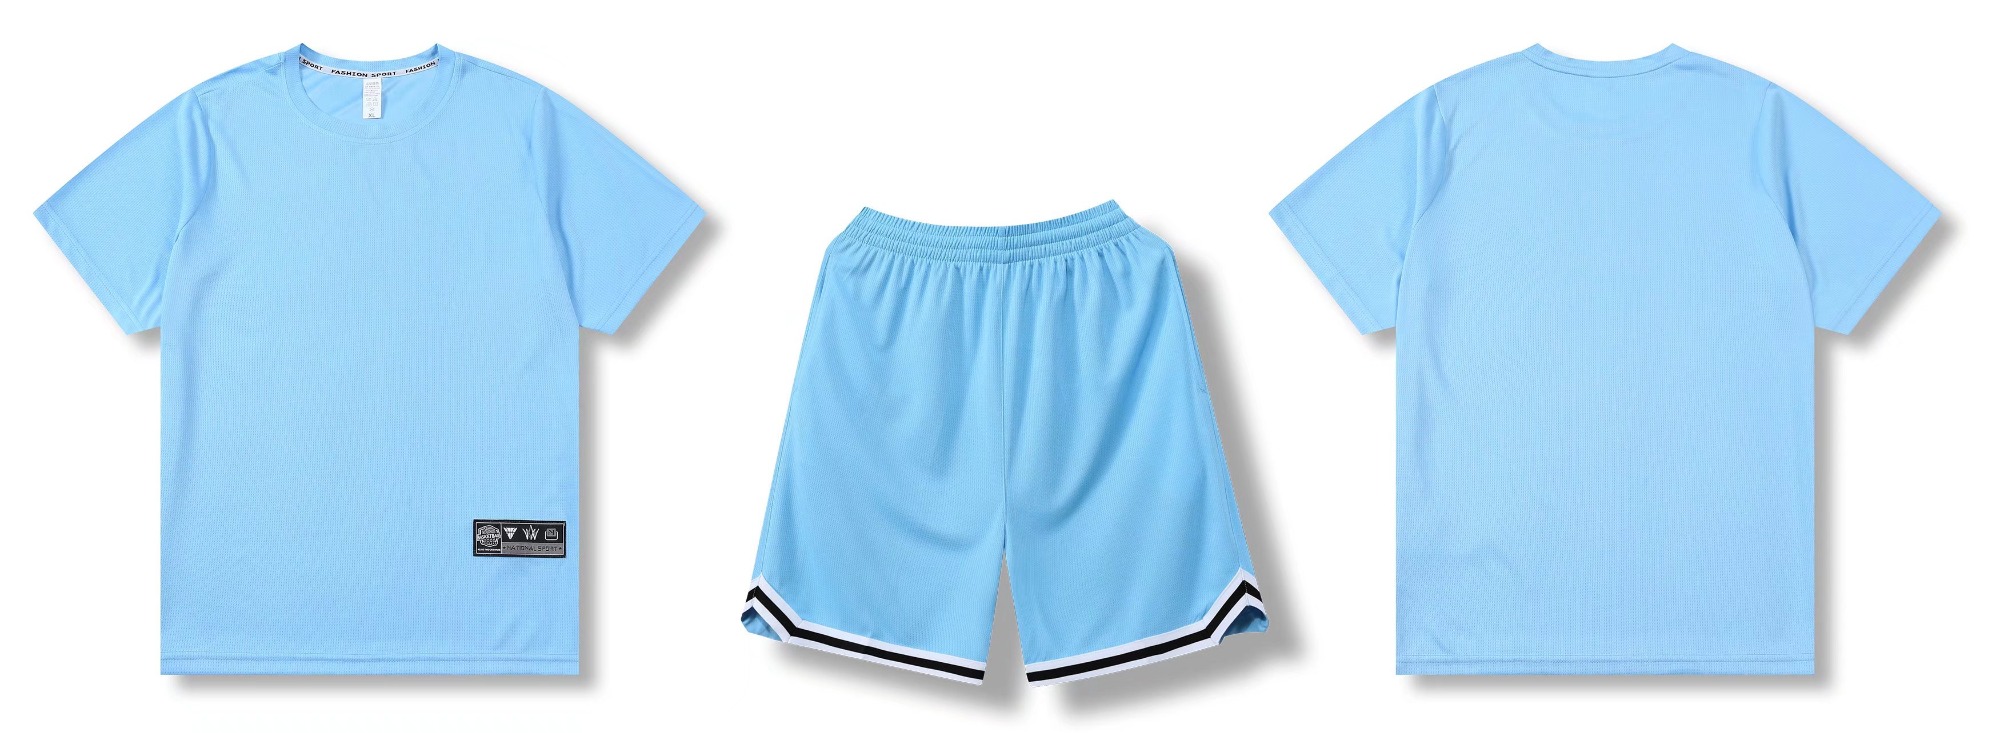 Popular Design Fashion Sportswear Sports Blue Activewear Casual Uniform-YW